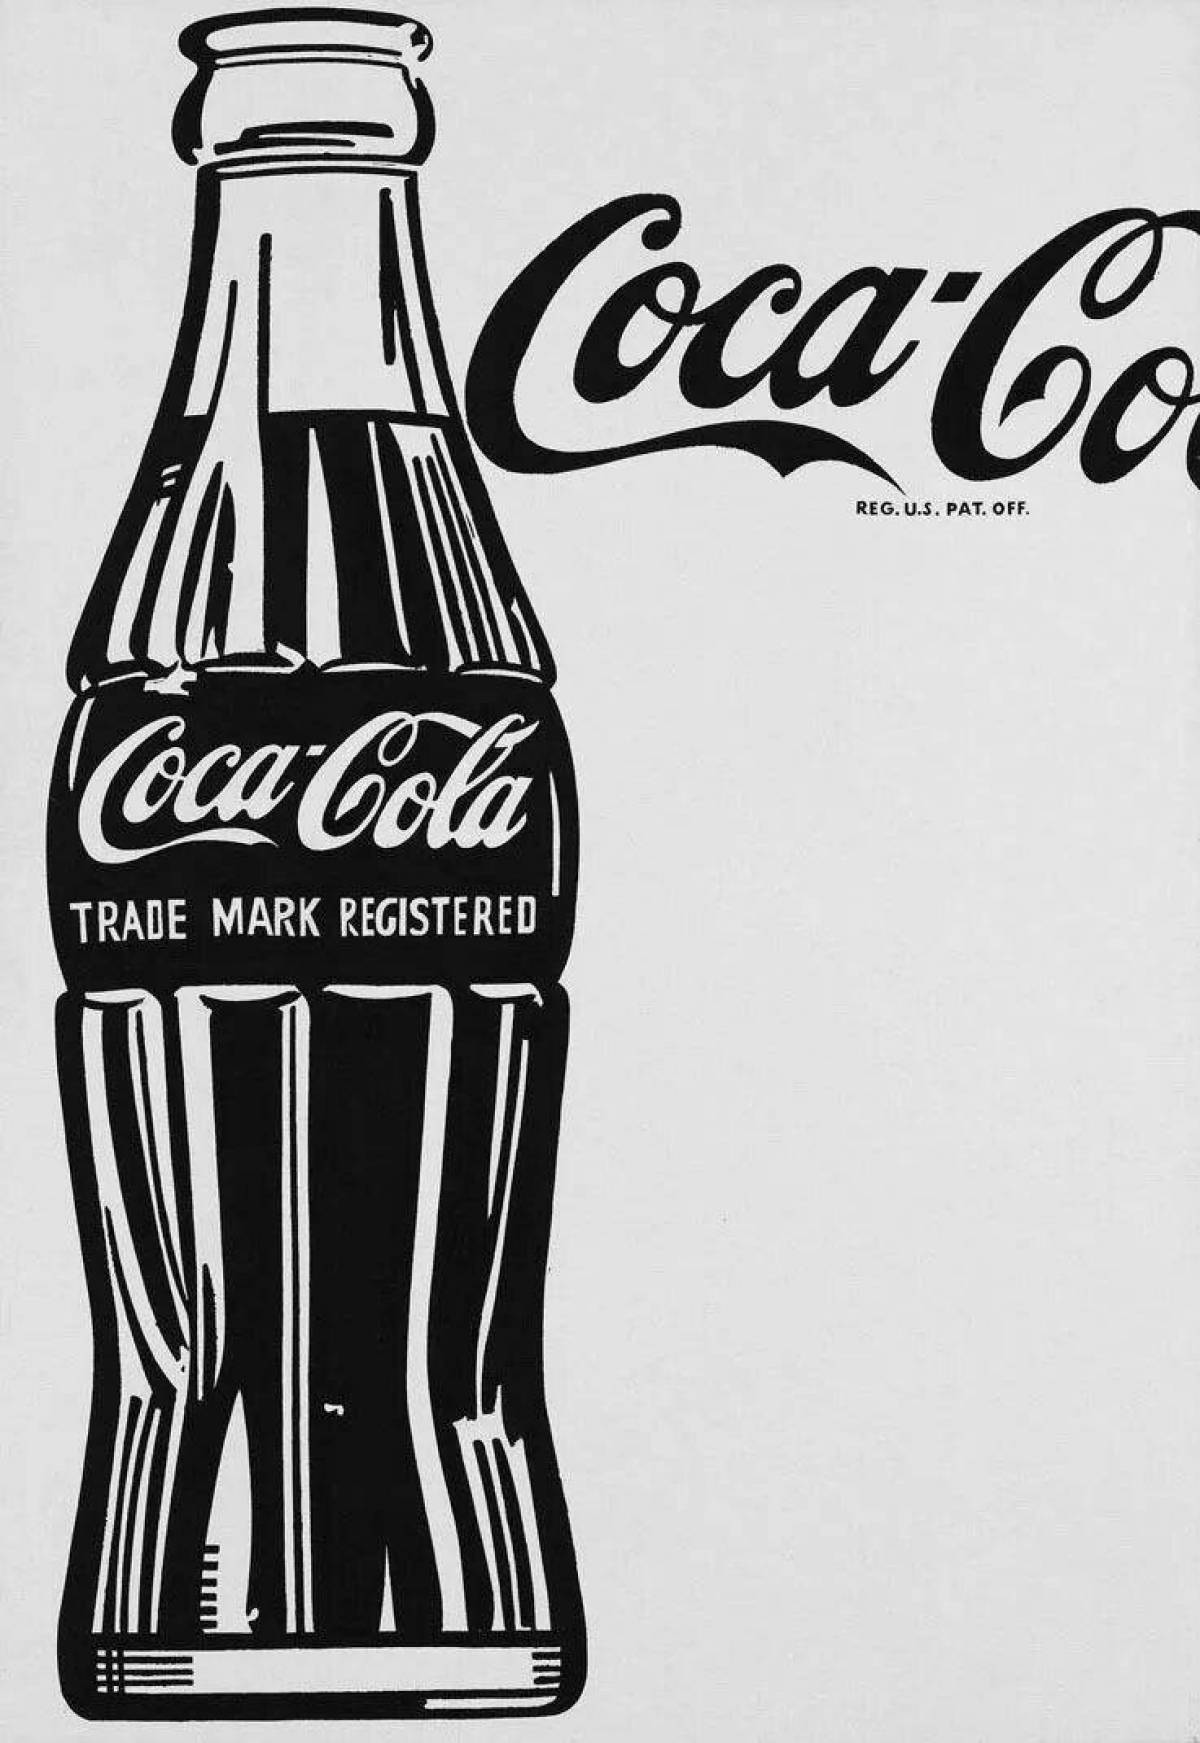 Coloring book shining Coca-Cola